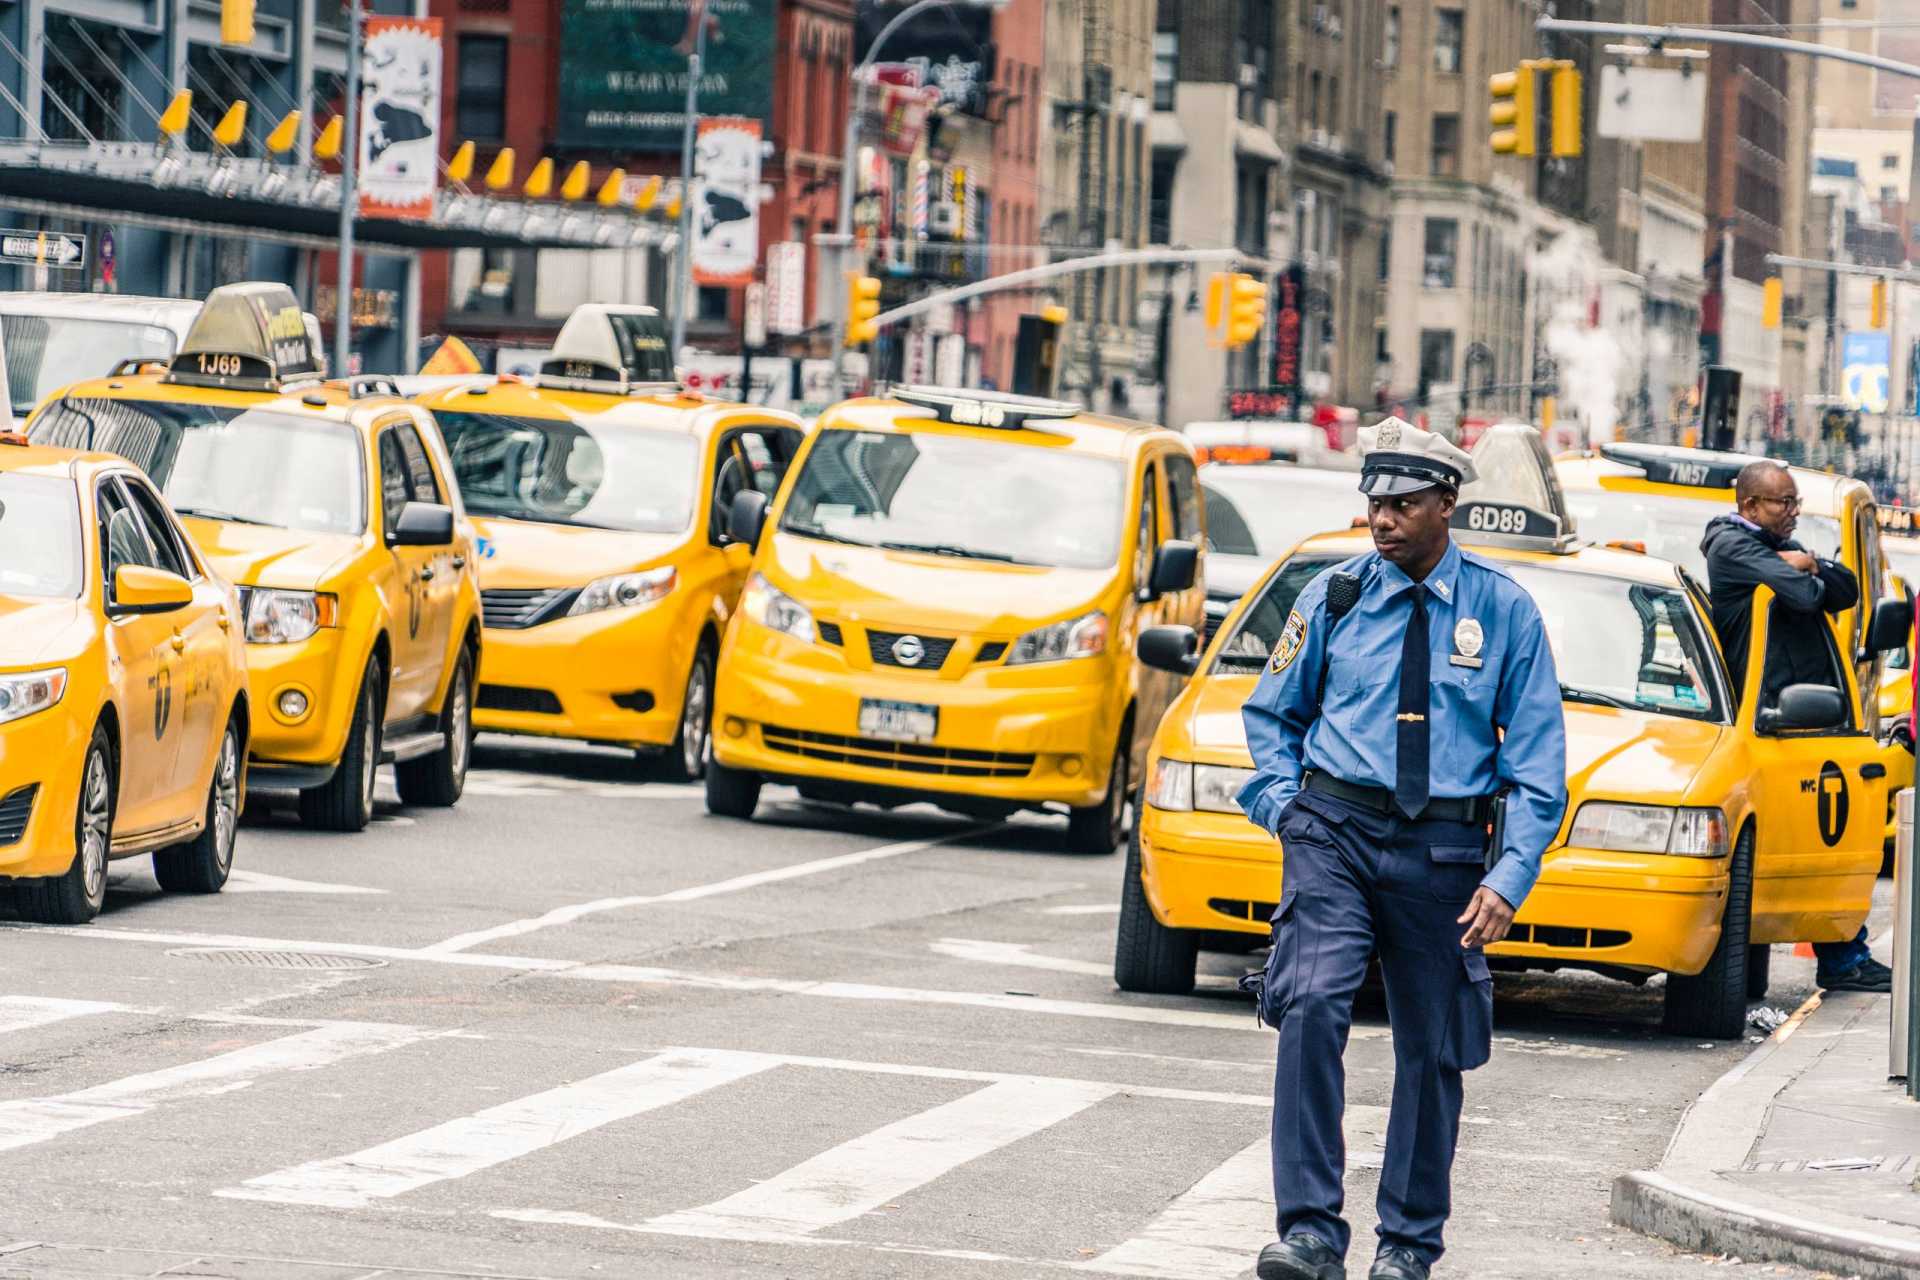 usa new york police taxi